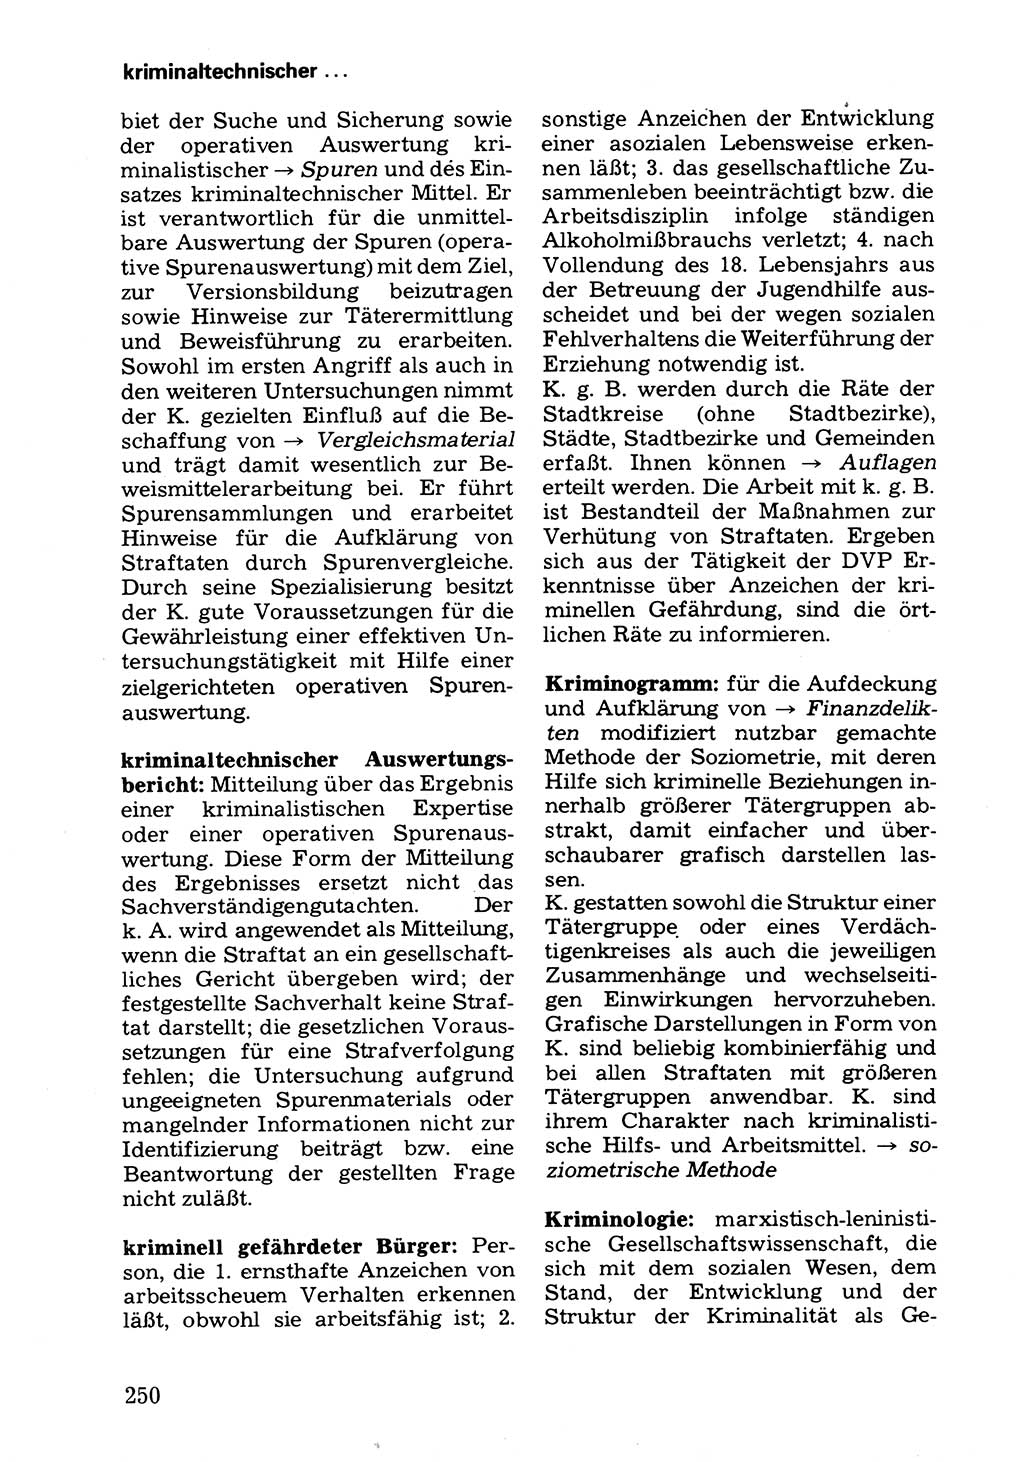 Wörterbuch der sozialistischen Kriminalistik [Deutsche Demokratische Republik (DDR)] 1981, Seite 250 (Wb. soz. Krim. DDR 1981, S. 250)